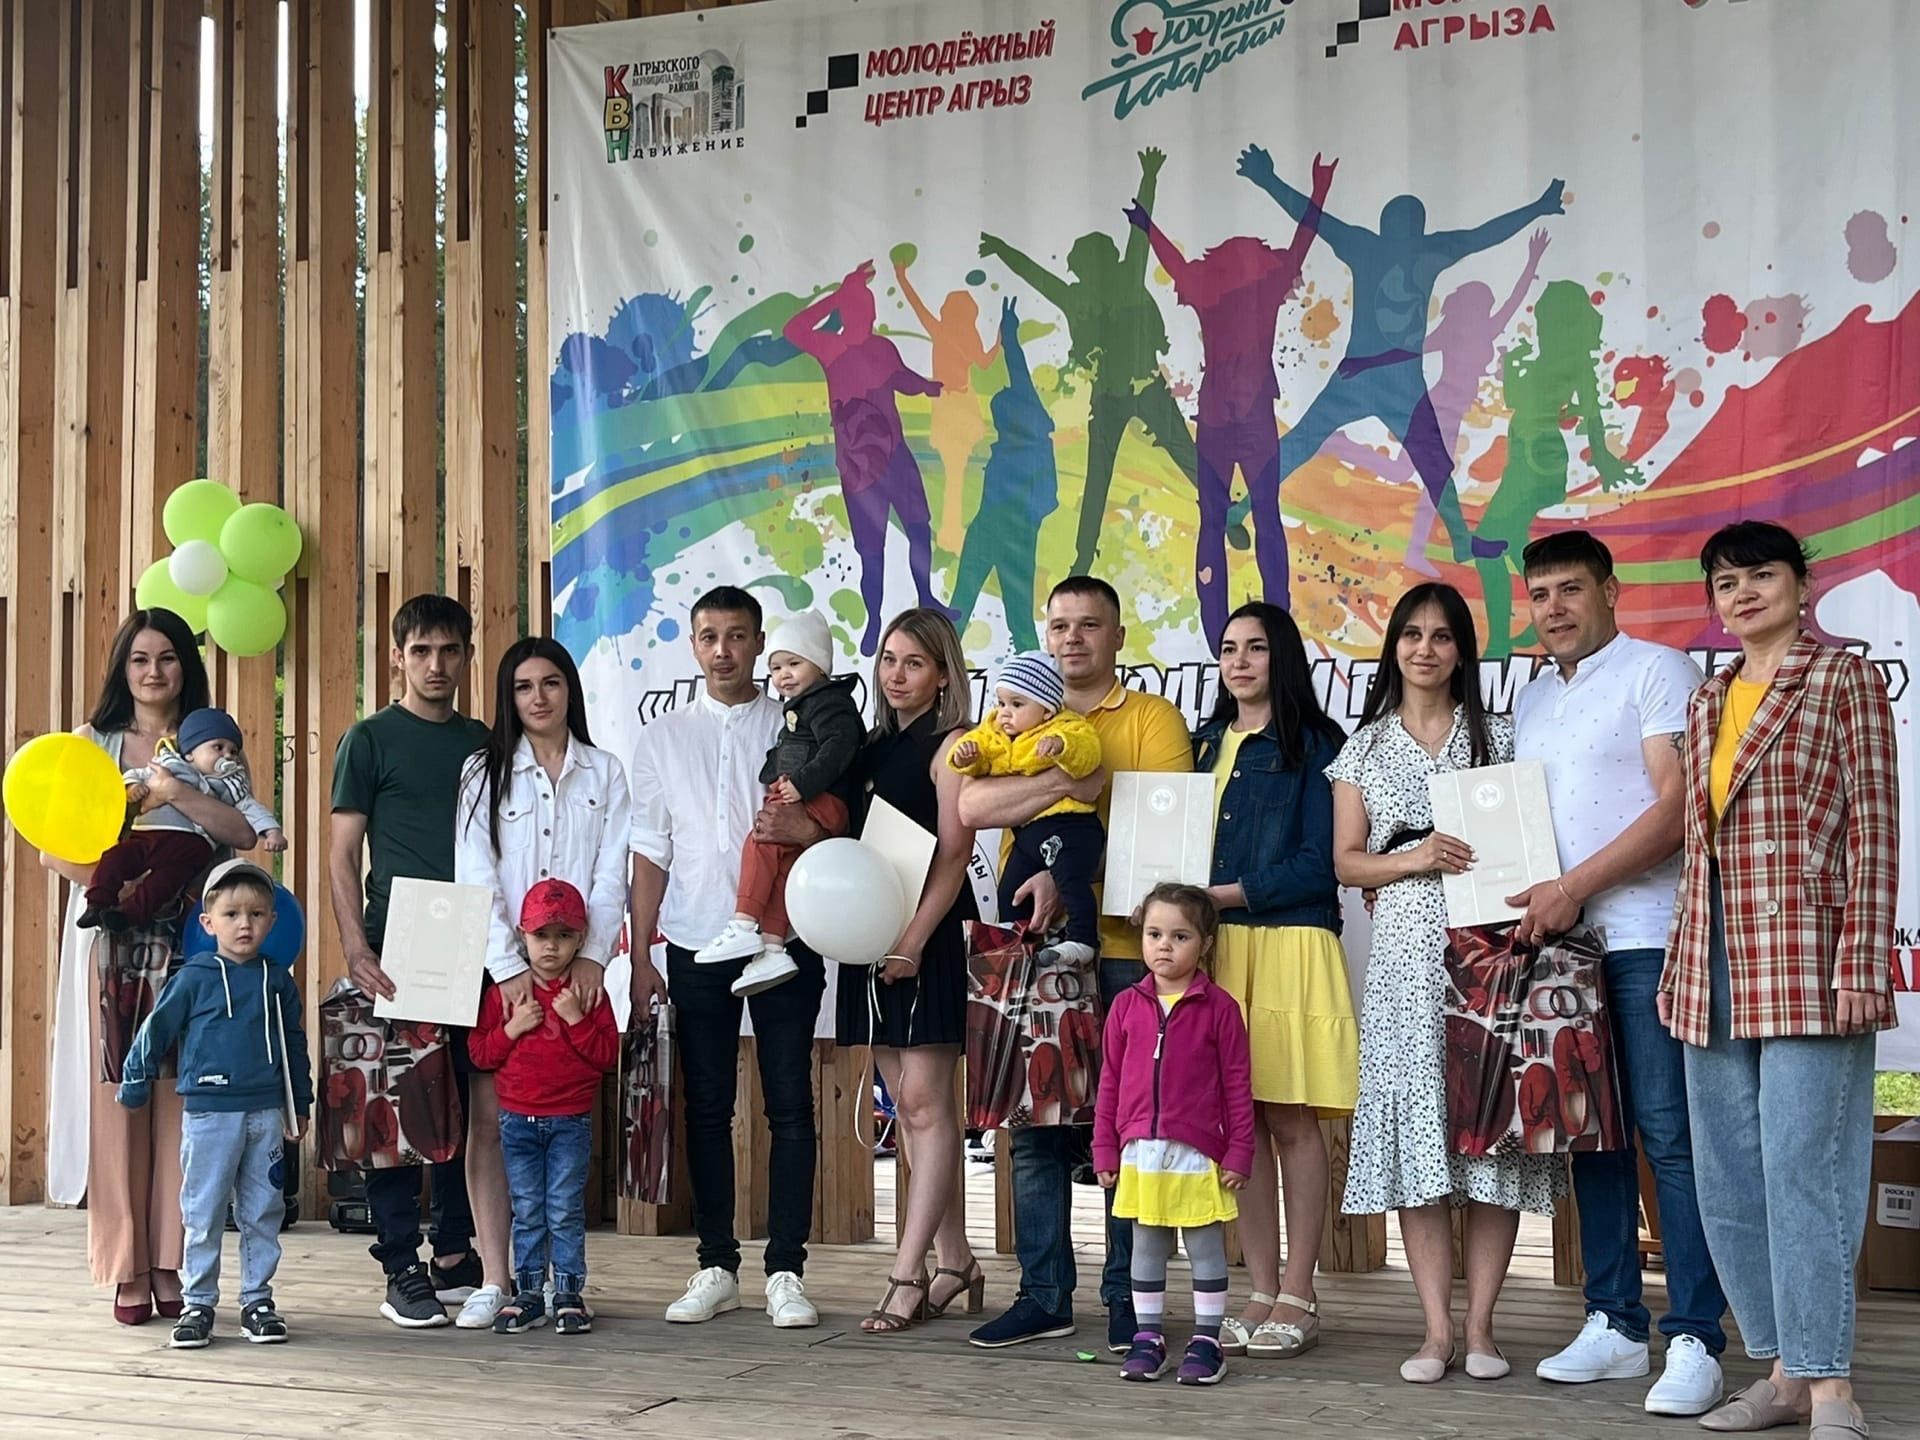 5 семей в Агрызе поздравили с 5-летием семейной жизни в Агрызе